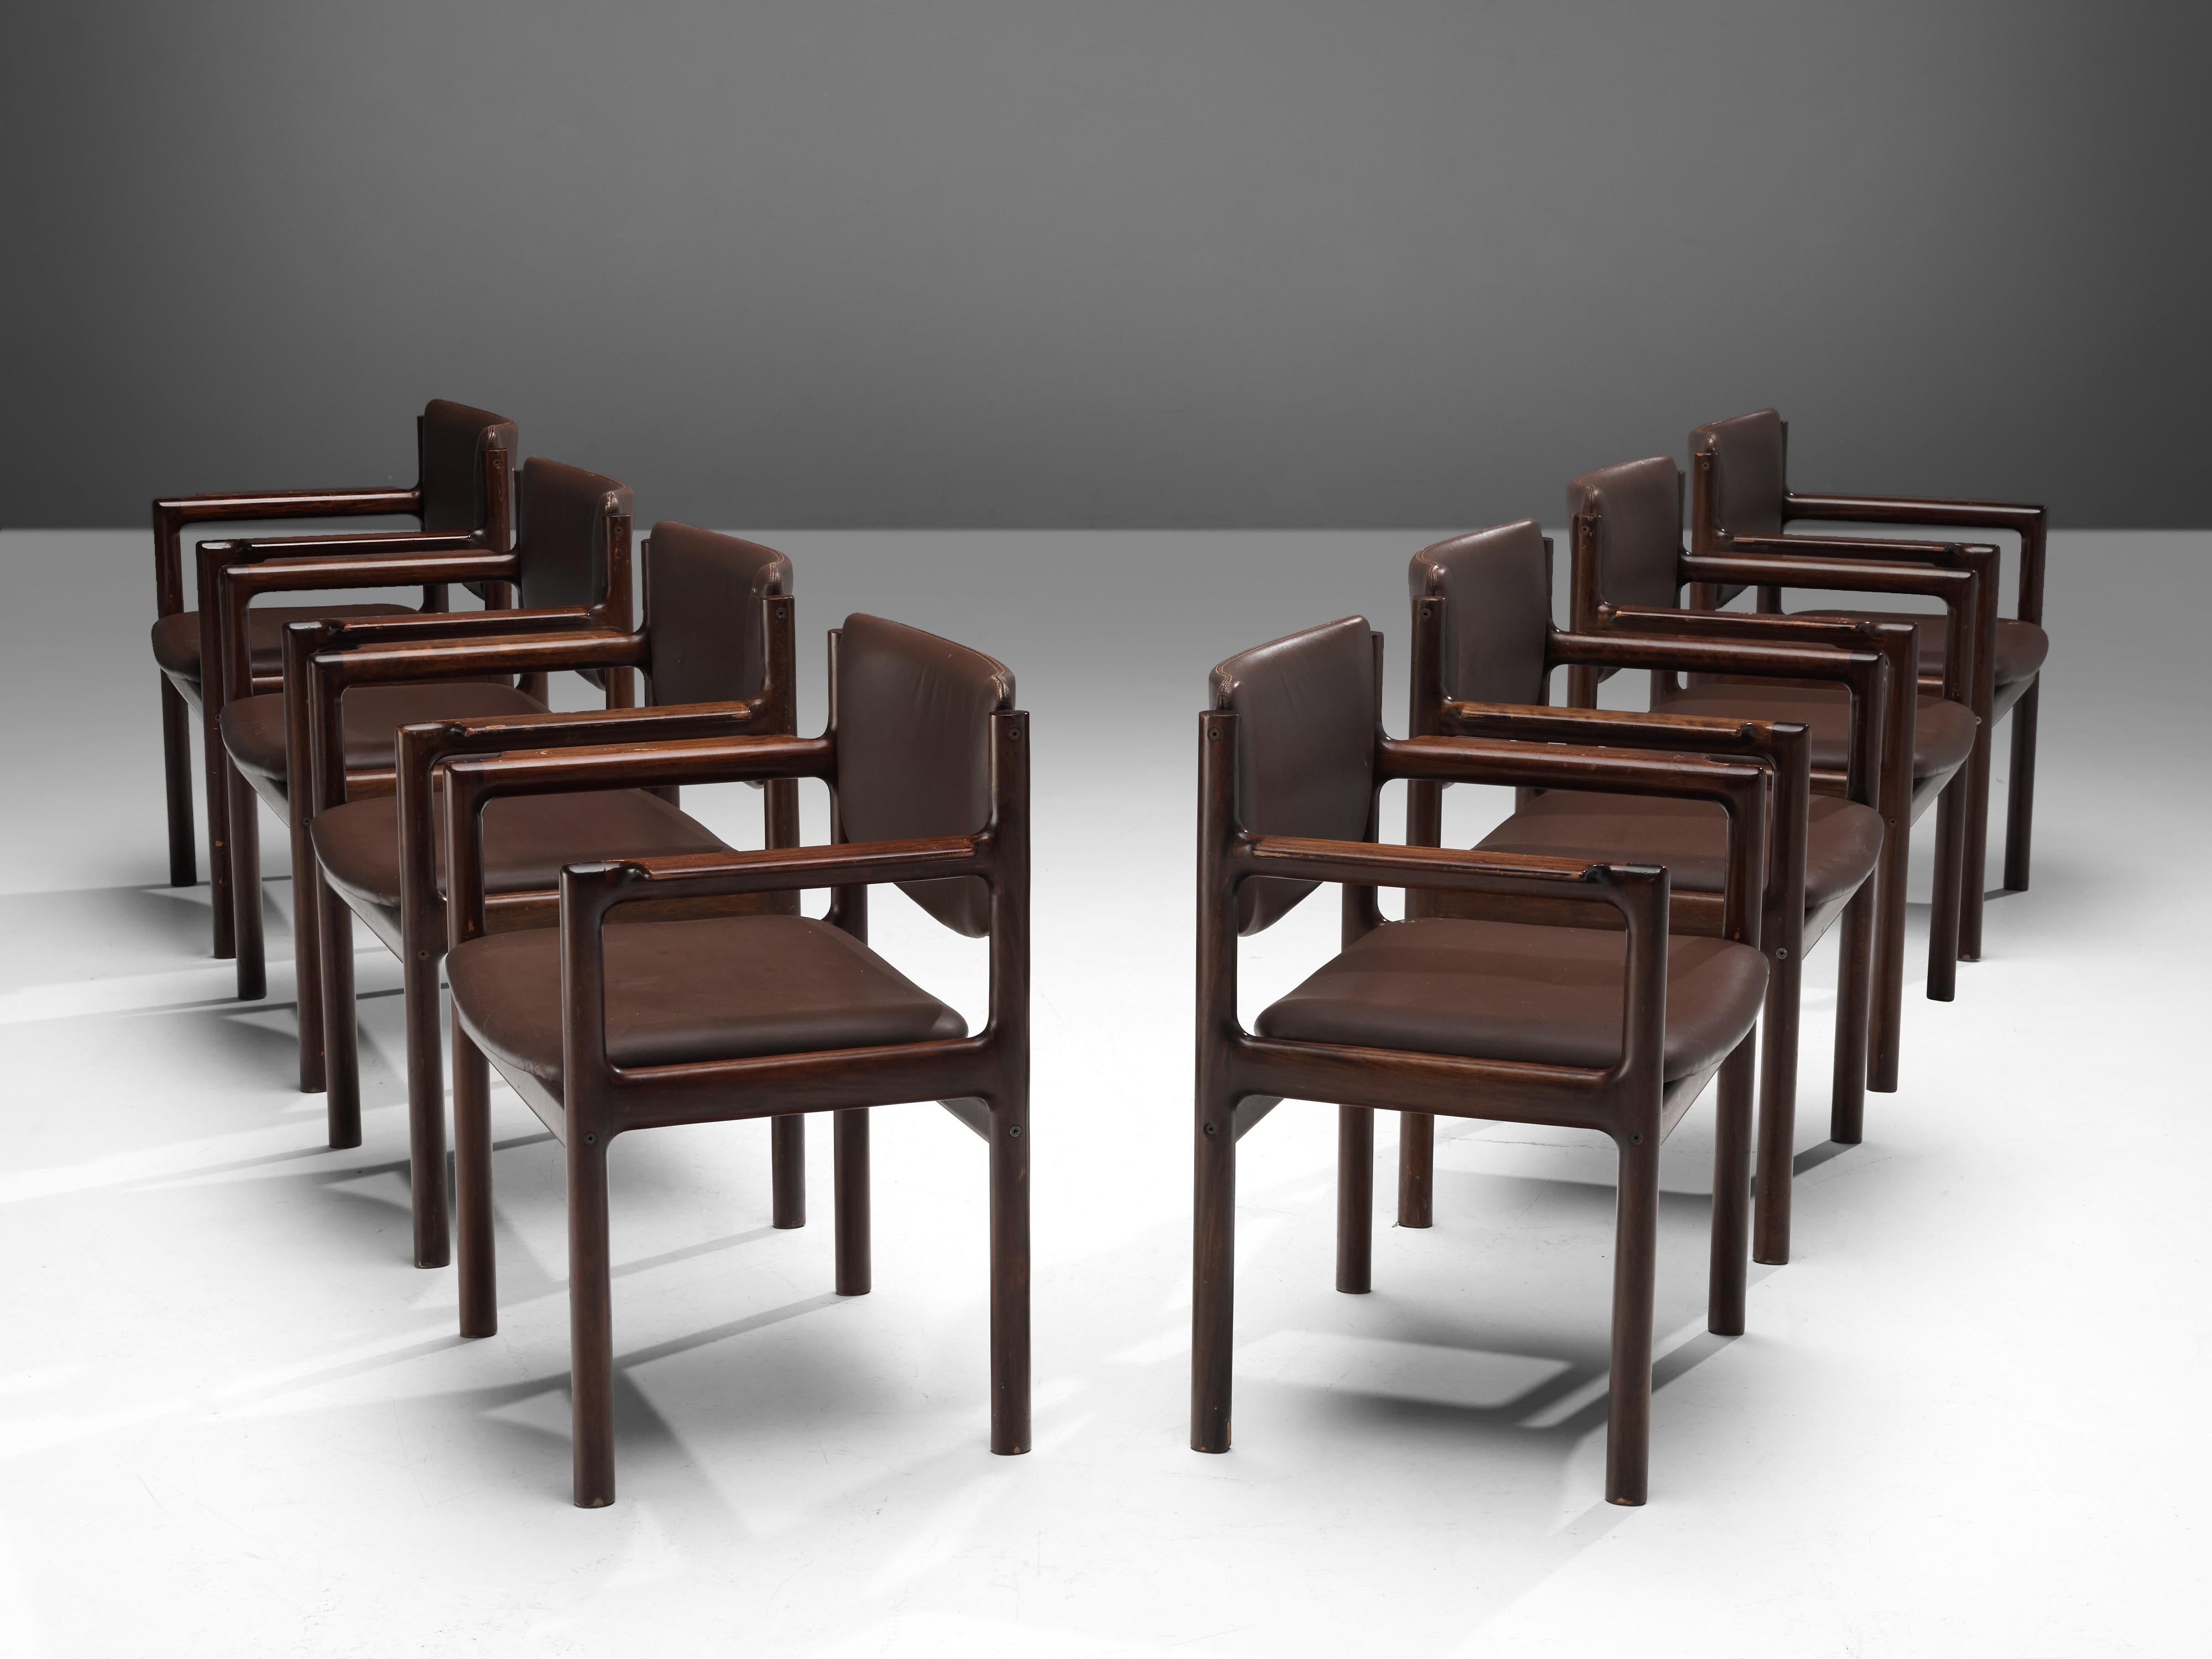 Ensemble de huit fauteuils, acajou teinté, similicuir, Danemark, années 1960.

Le modèle de ces chaises est anguleux et modeste car il est constitué de lignes principalement horizontales et verticales. Les formes claires et angulaires donnent à ces